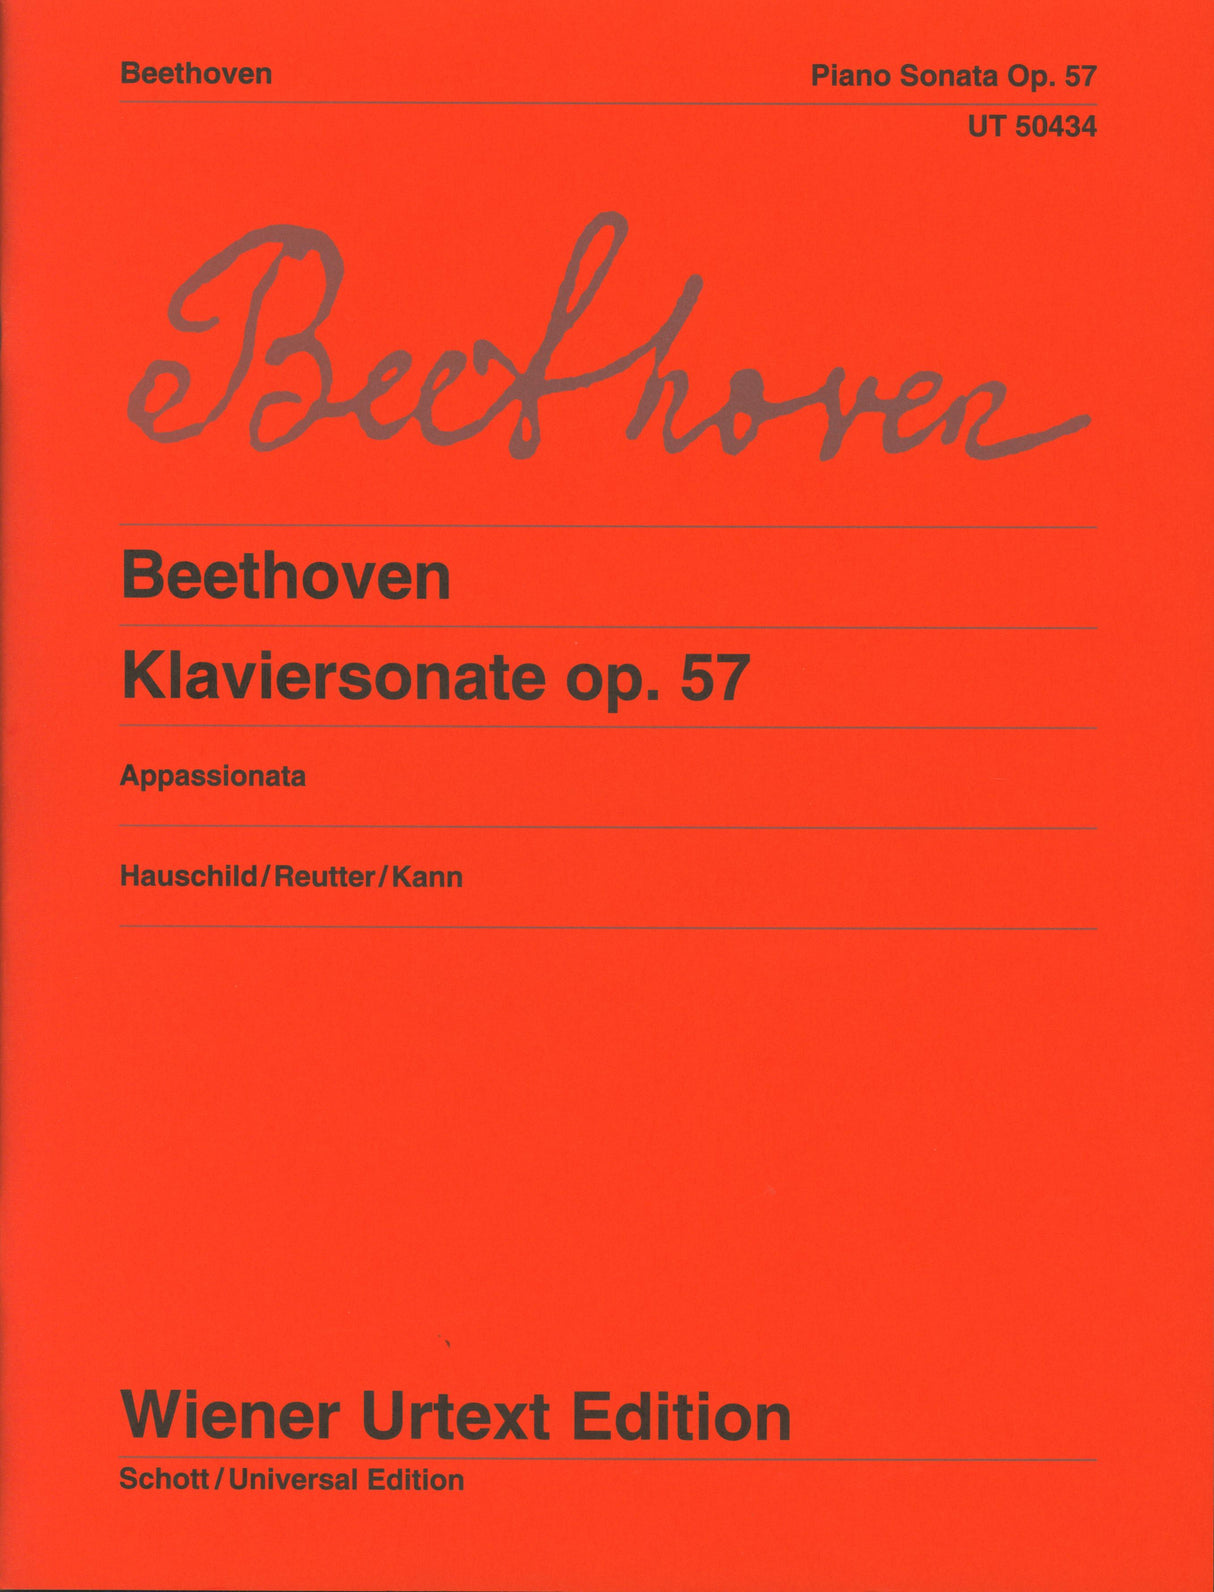 Beethoven: Piano Sonata No. 23 in F Minor, Op. 57